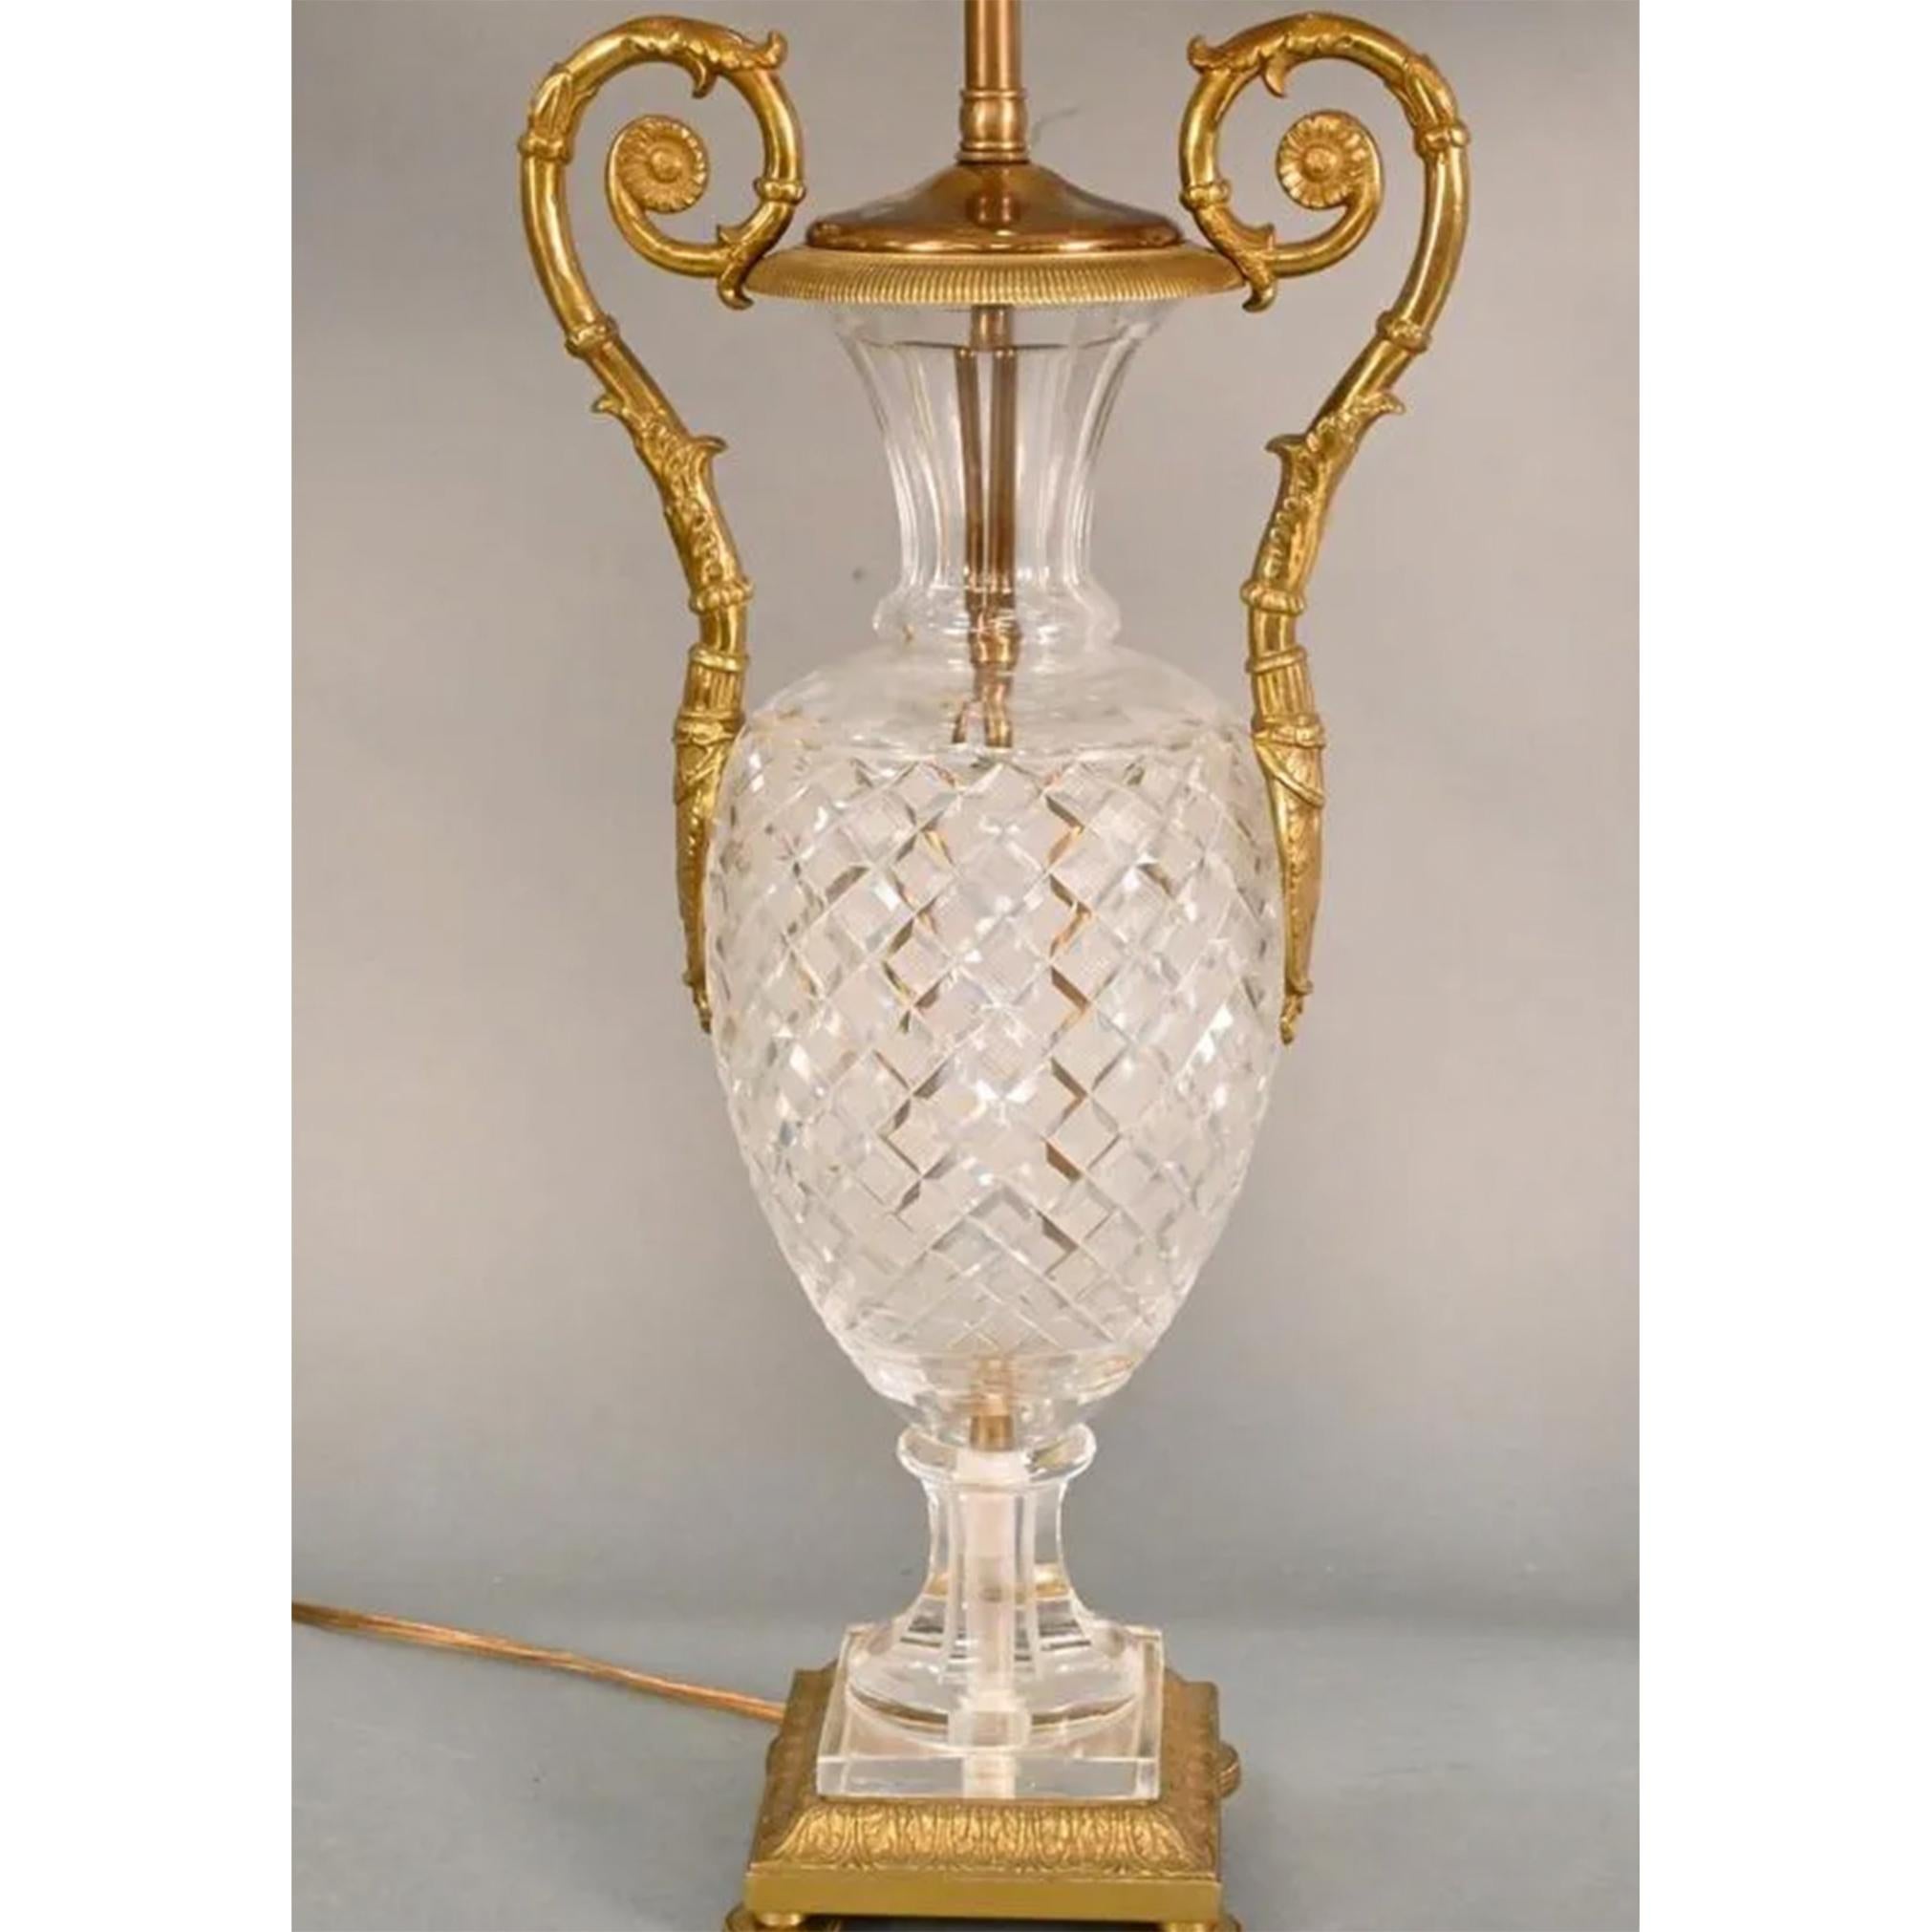 Paire de lampes en cristal taillé de Baccarat

Vases de style Empire avec motif de treillis et poignées en bronze en forme de volutes, reposant sur une base carrée en bronze. 

Hauteur : 29 in.